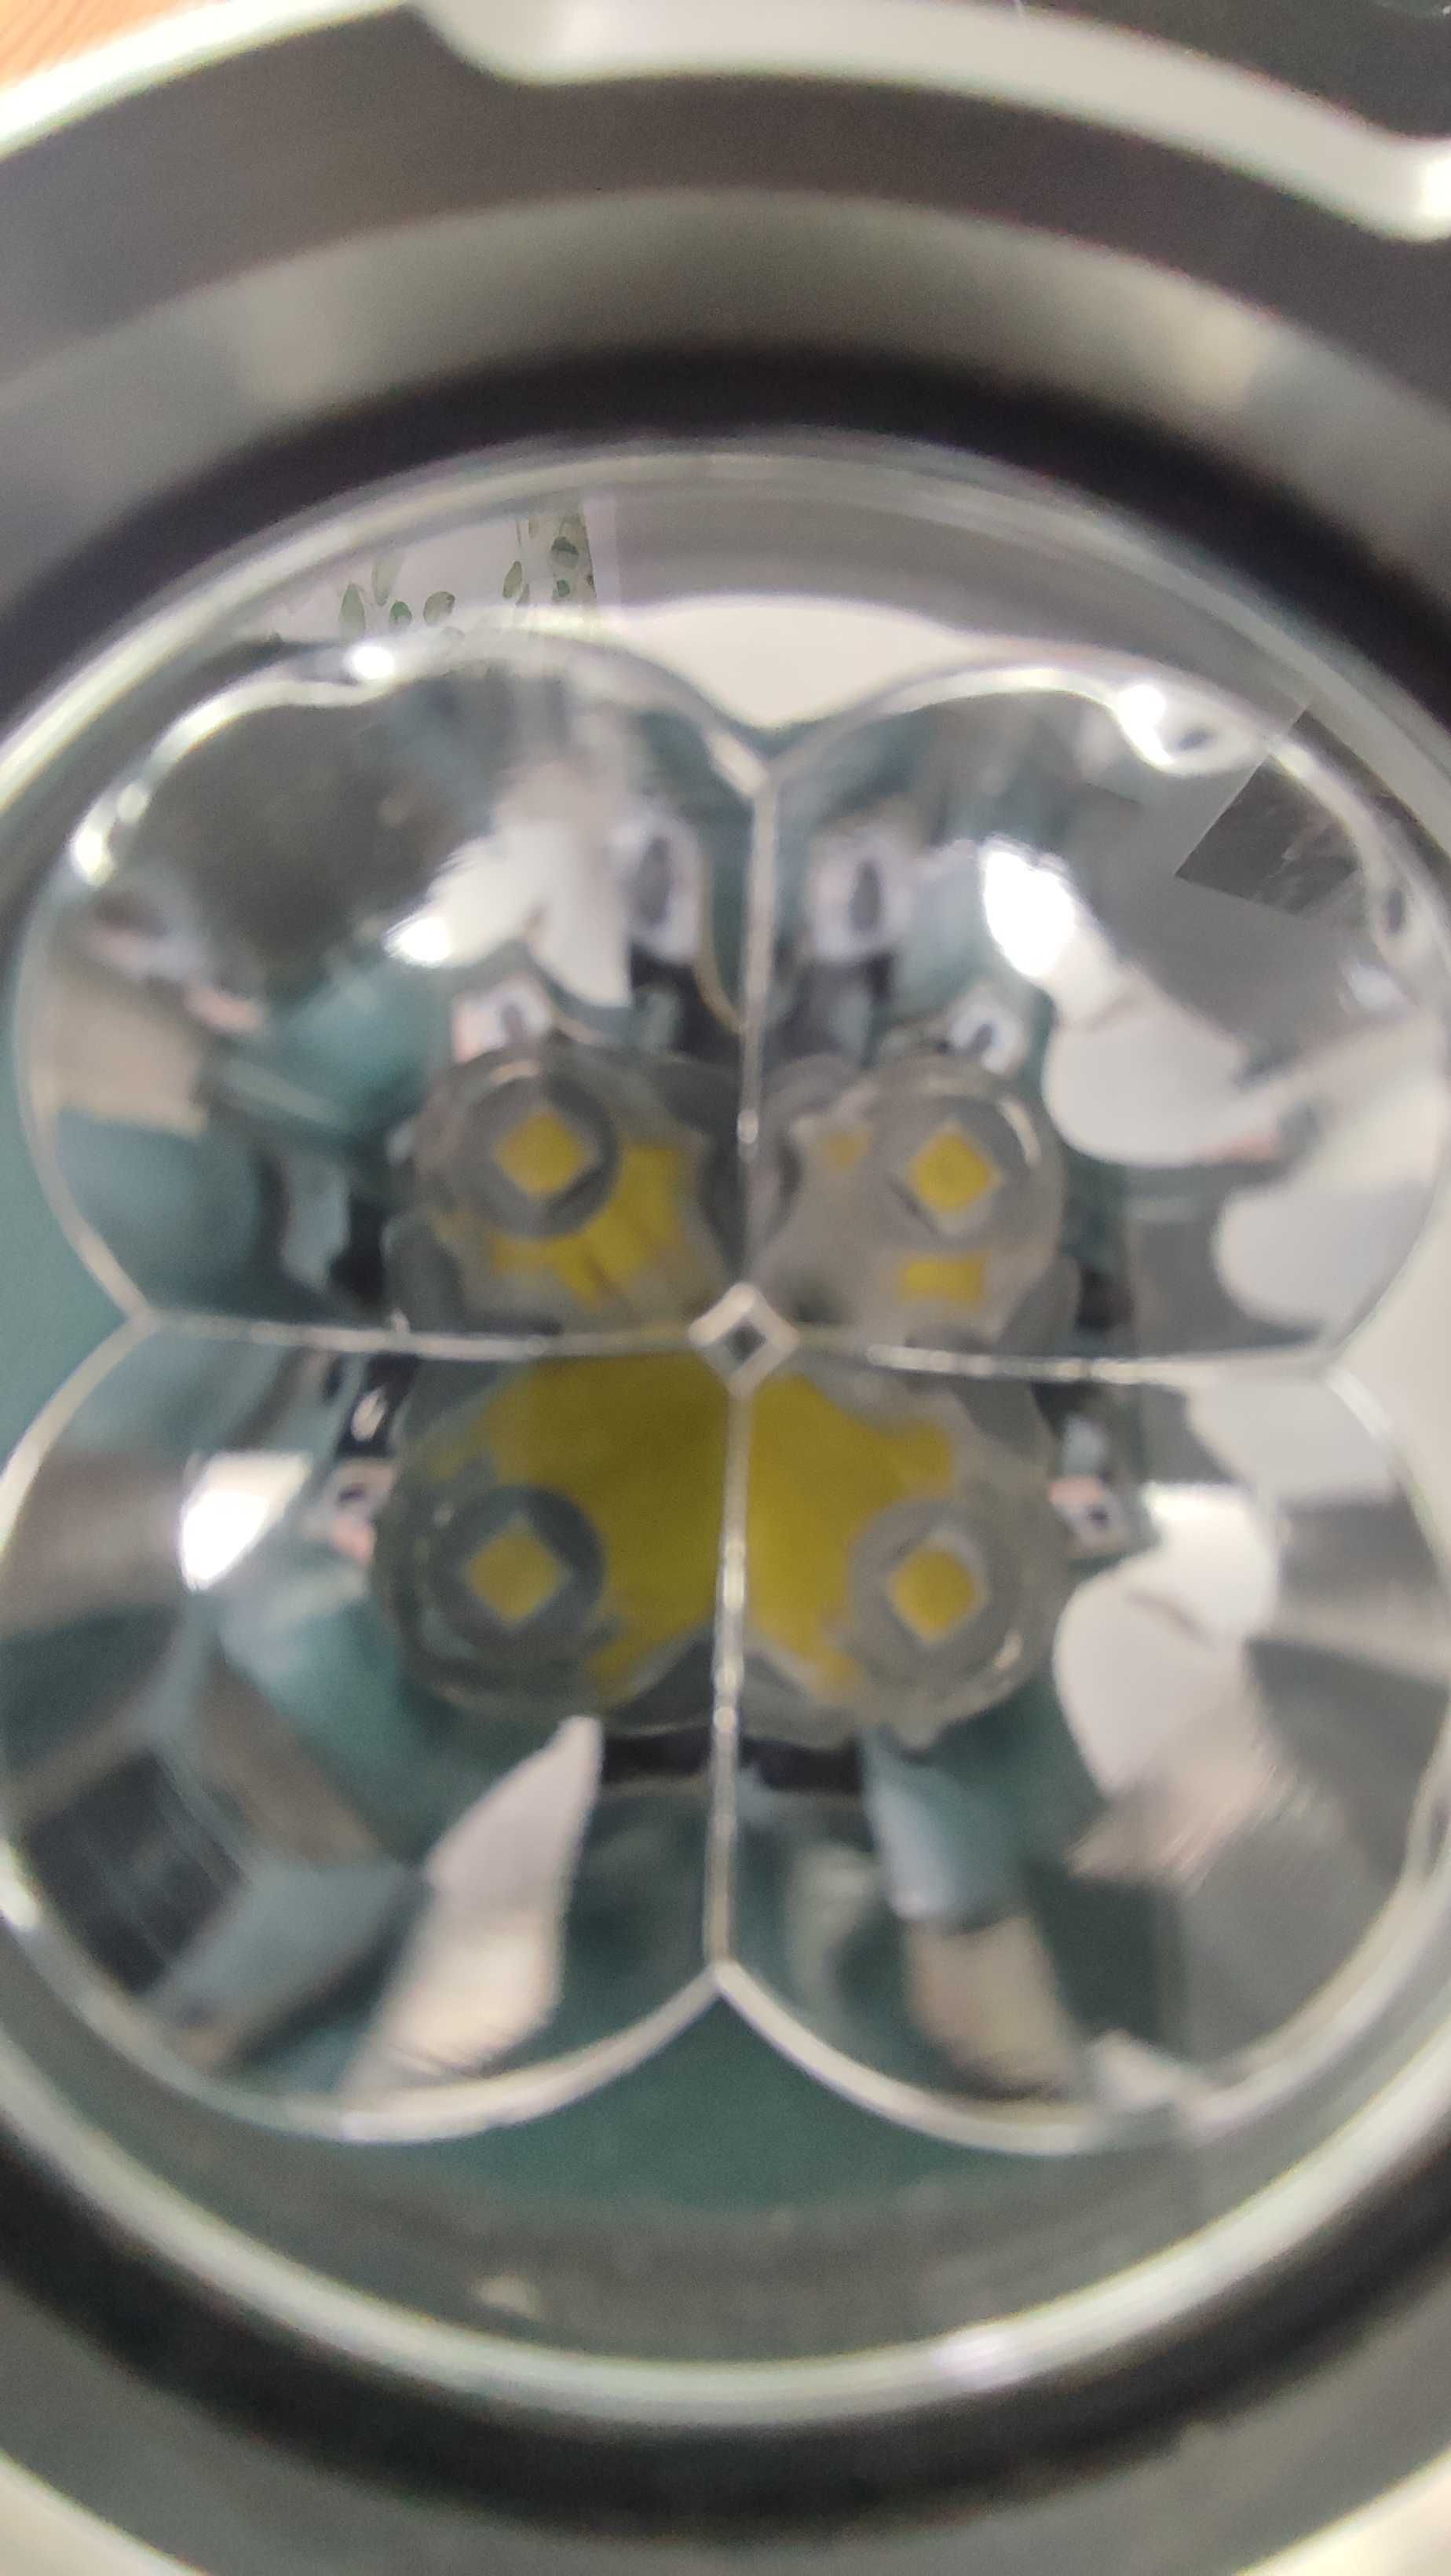 latarka BLF Q8 - na 4 ogniwa 18650 - 250 zł używana pare razy w domu